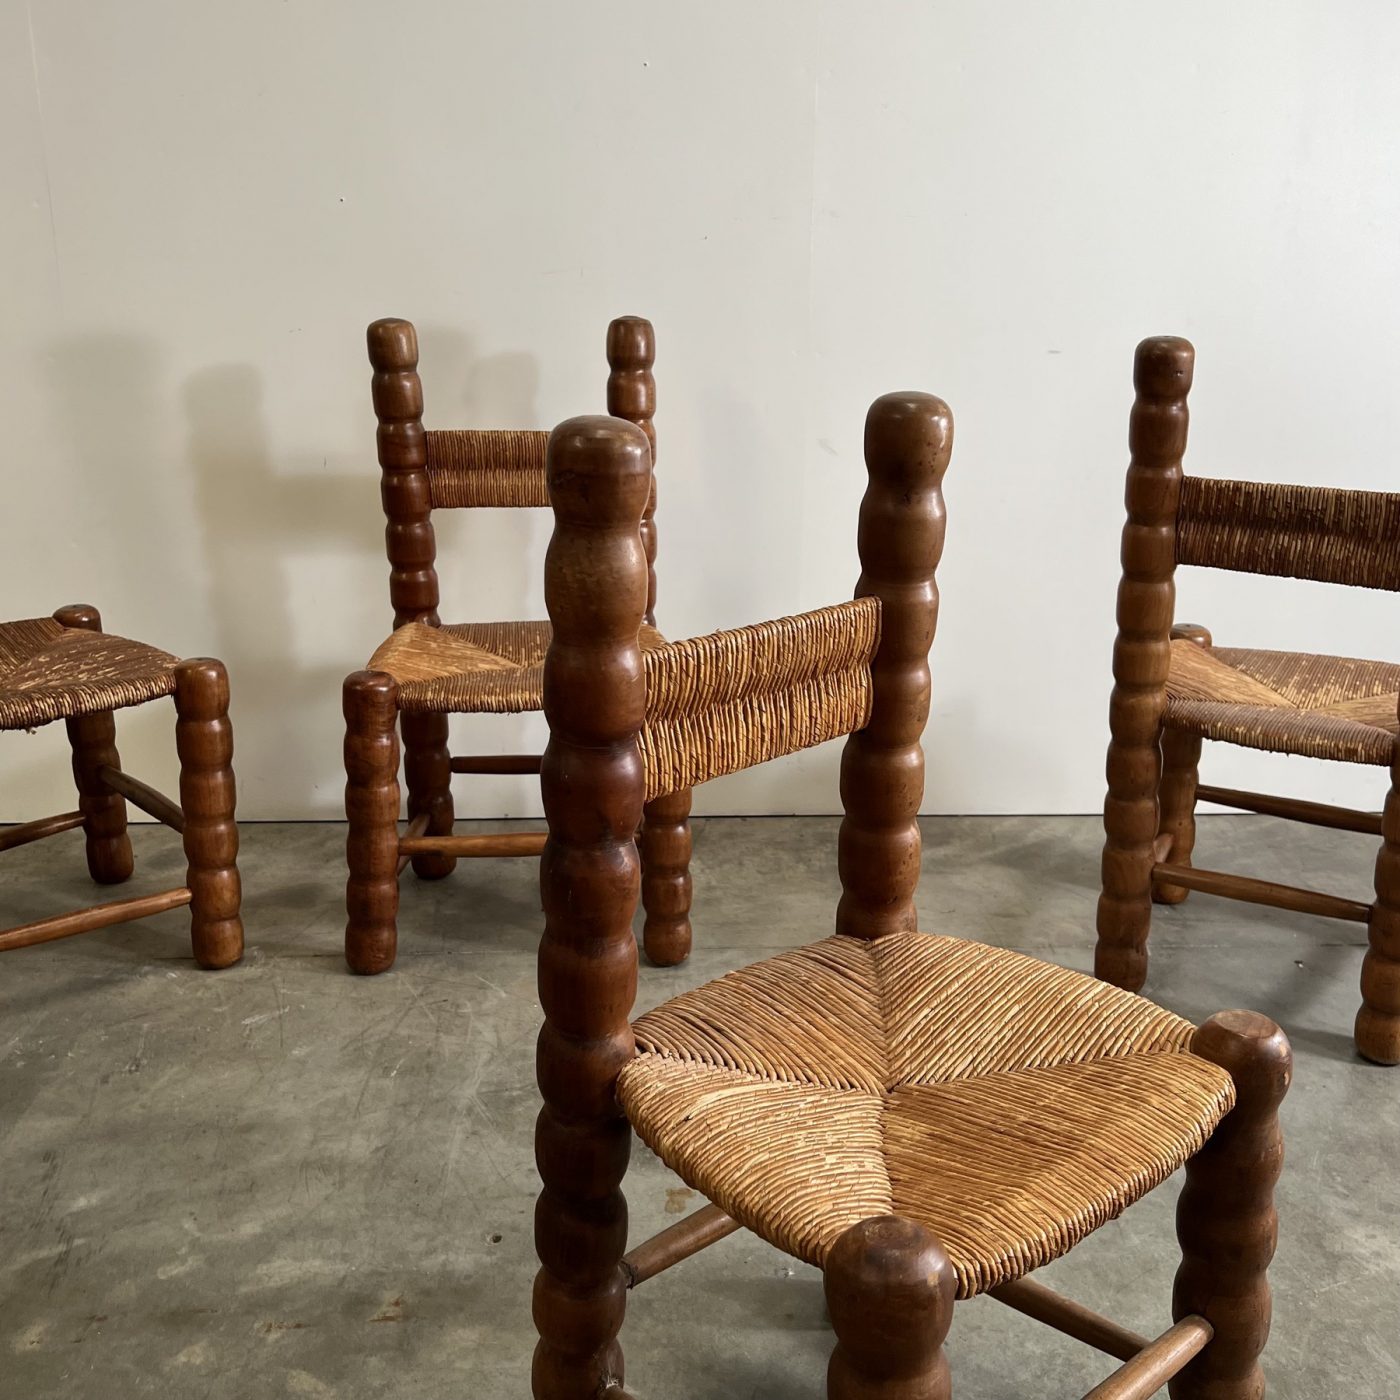 objet-vagabond-massive-chairs0004